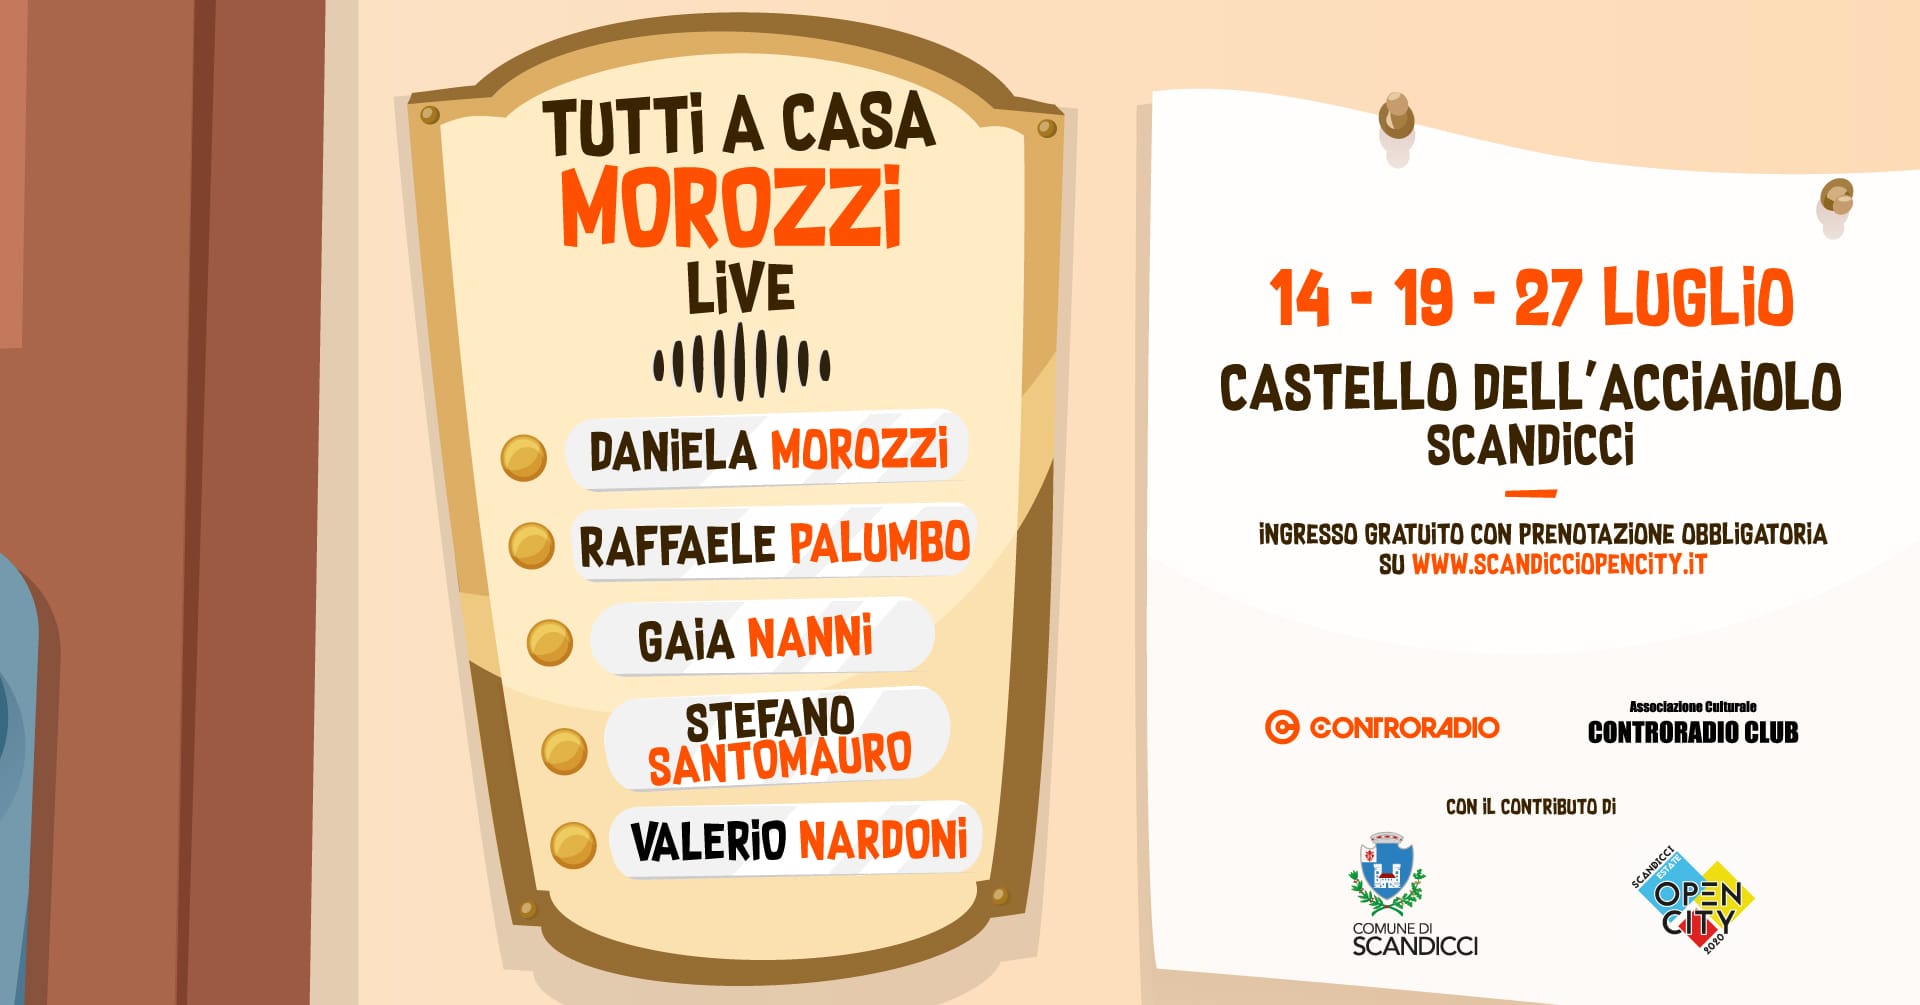 ‘Tutti a Casa Morozzi’, 3 appuntamenti dal vivo a Scandicci per ‘Open City 2020’